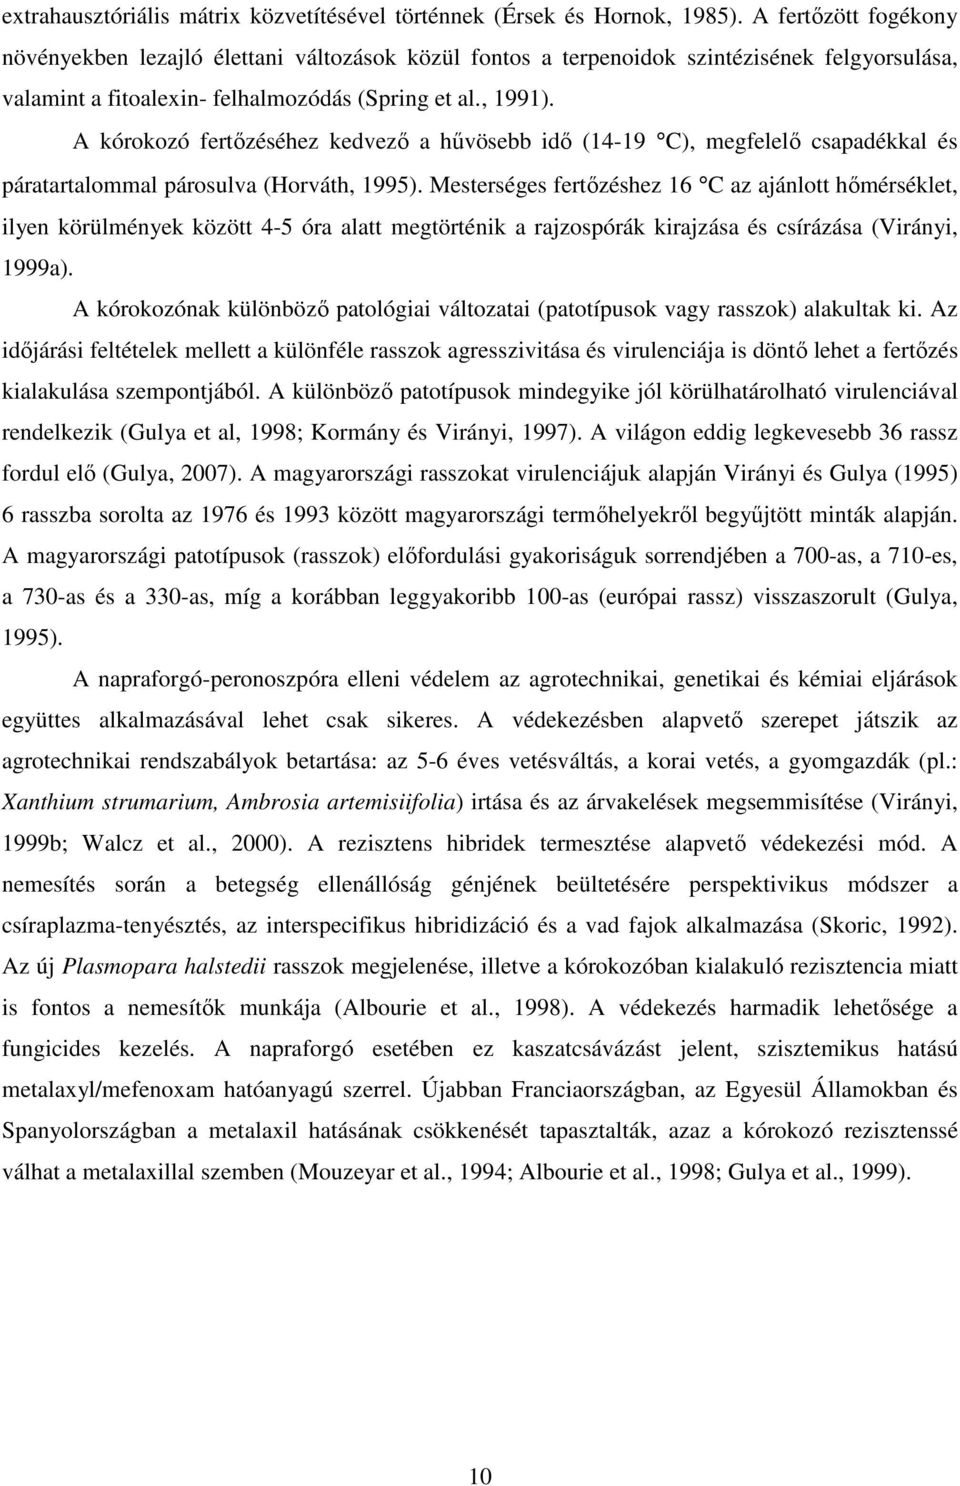 A kórokozó fertızéséhez kedvezı a hővösebb idı (14-19 C), megfelelı csapadékkal és páratartalommal párosulva (Horváth, 1995).